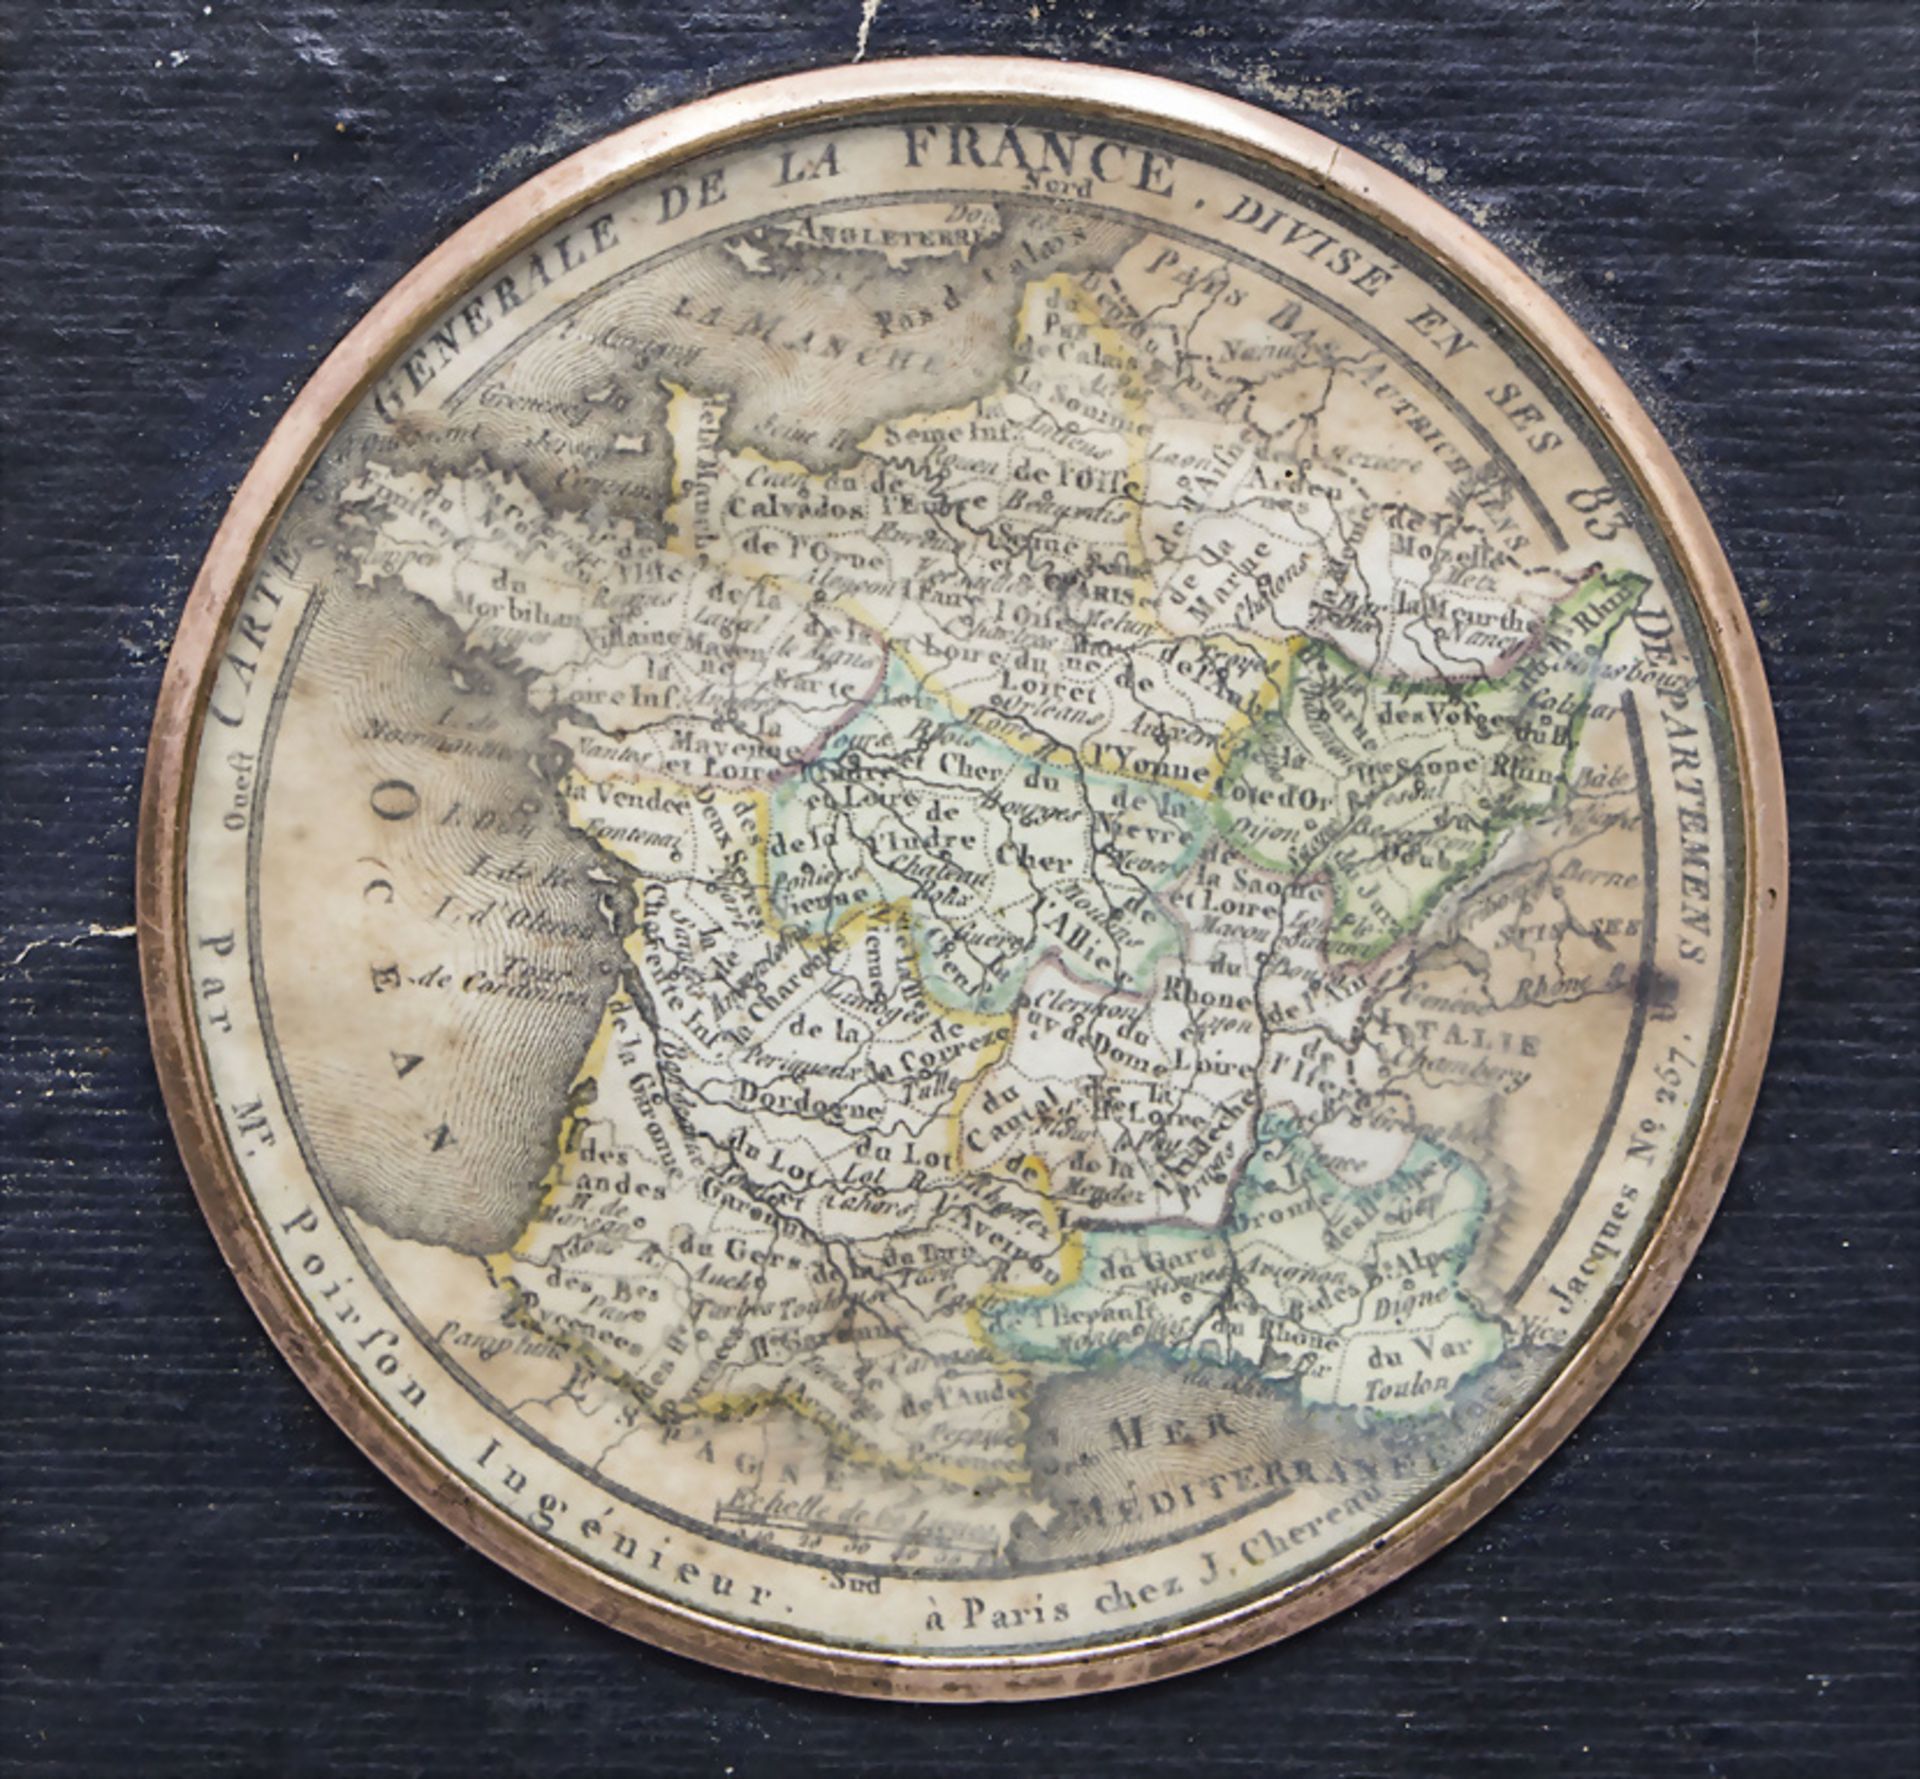 Miniatur 'Carte Generale de la France divisee en 83 Departemens', J. Chereau, Paris, 1793